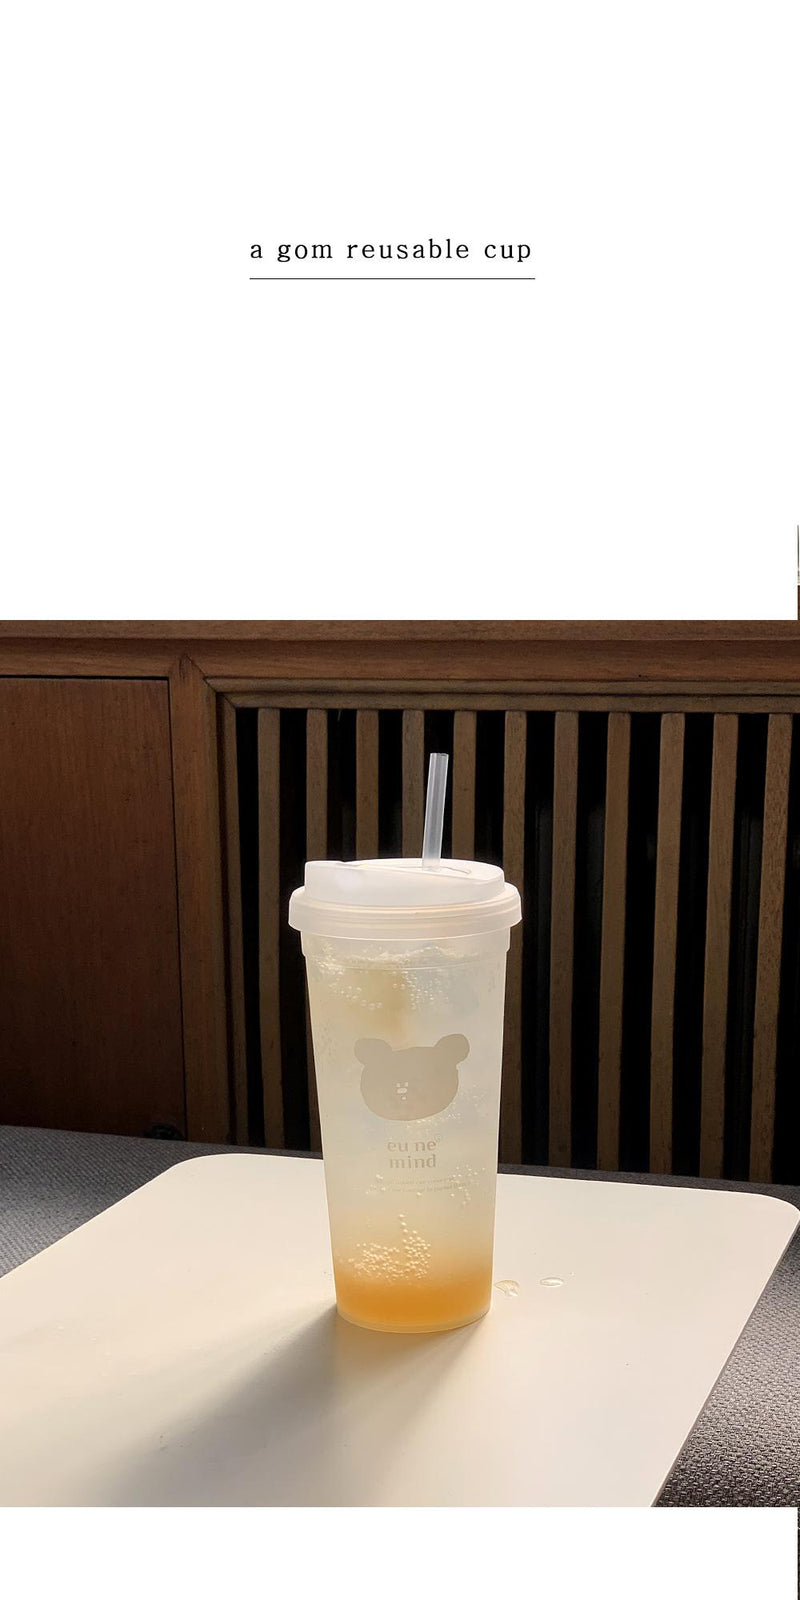 [BONBON] agom reusable cup